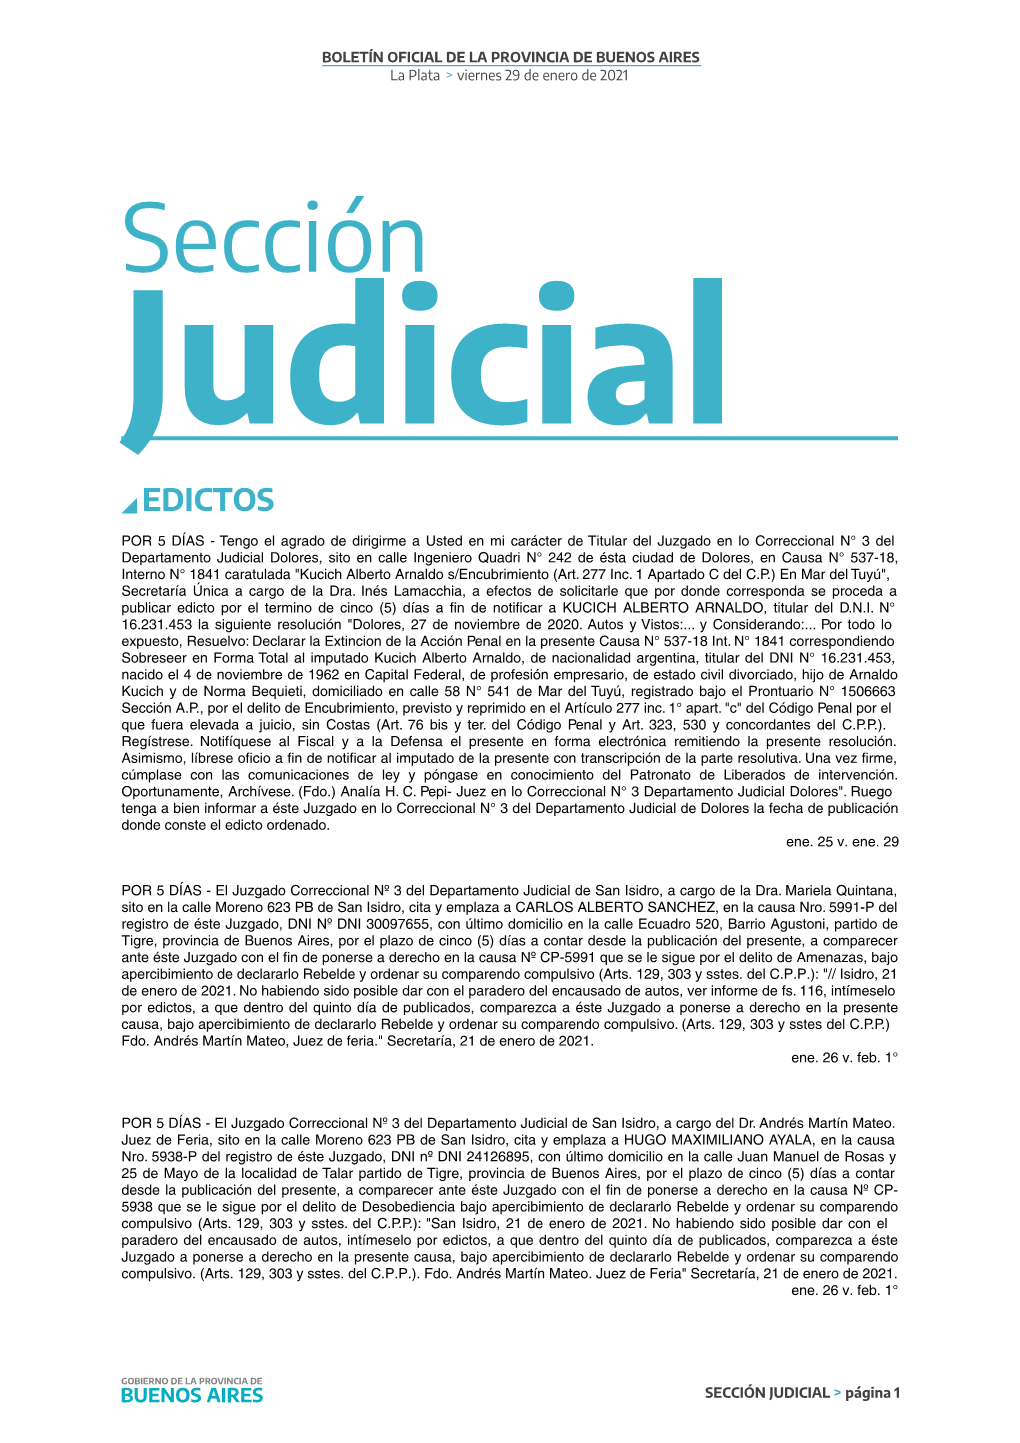 Sección Judicial